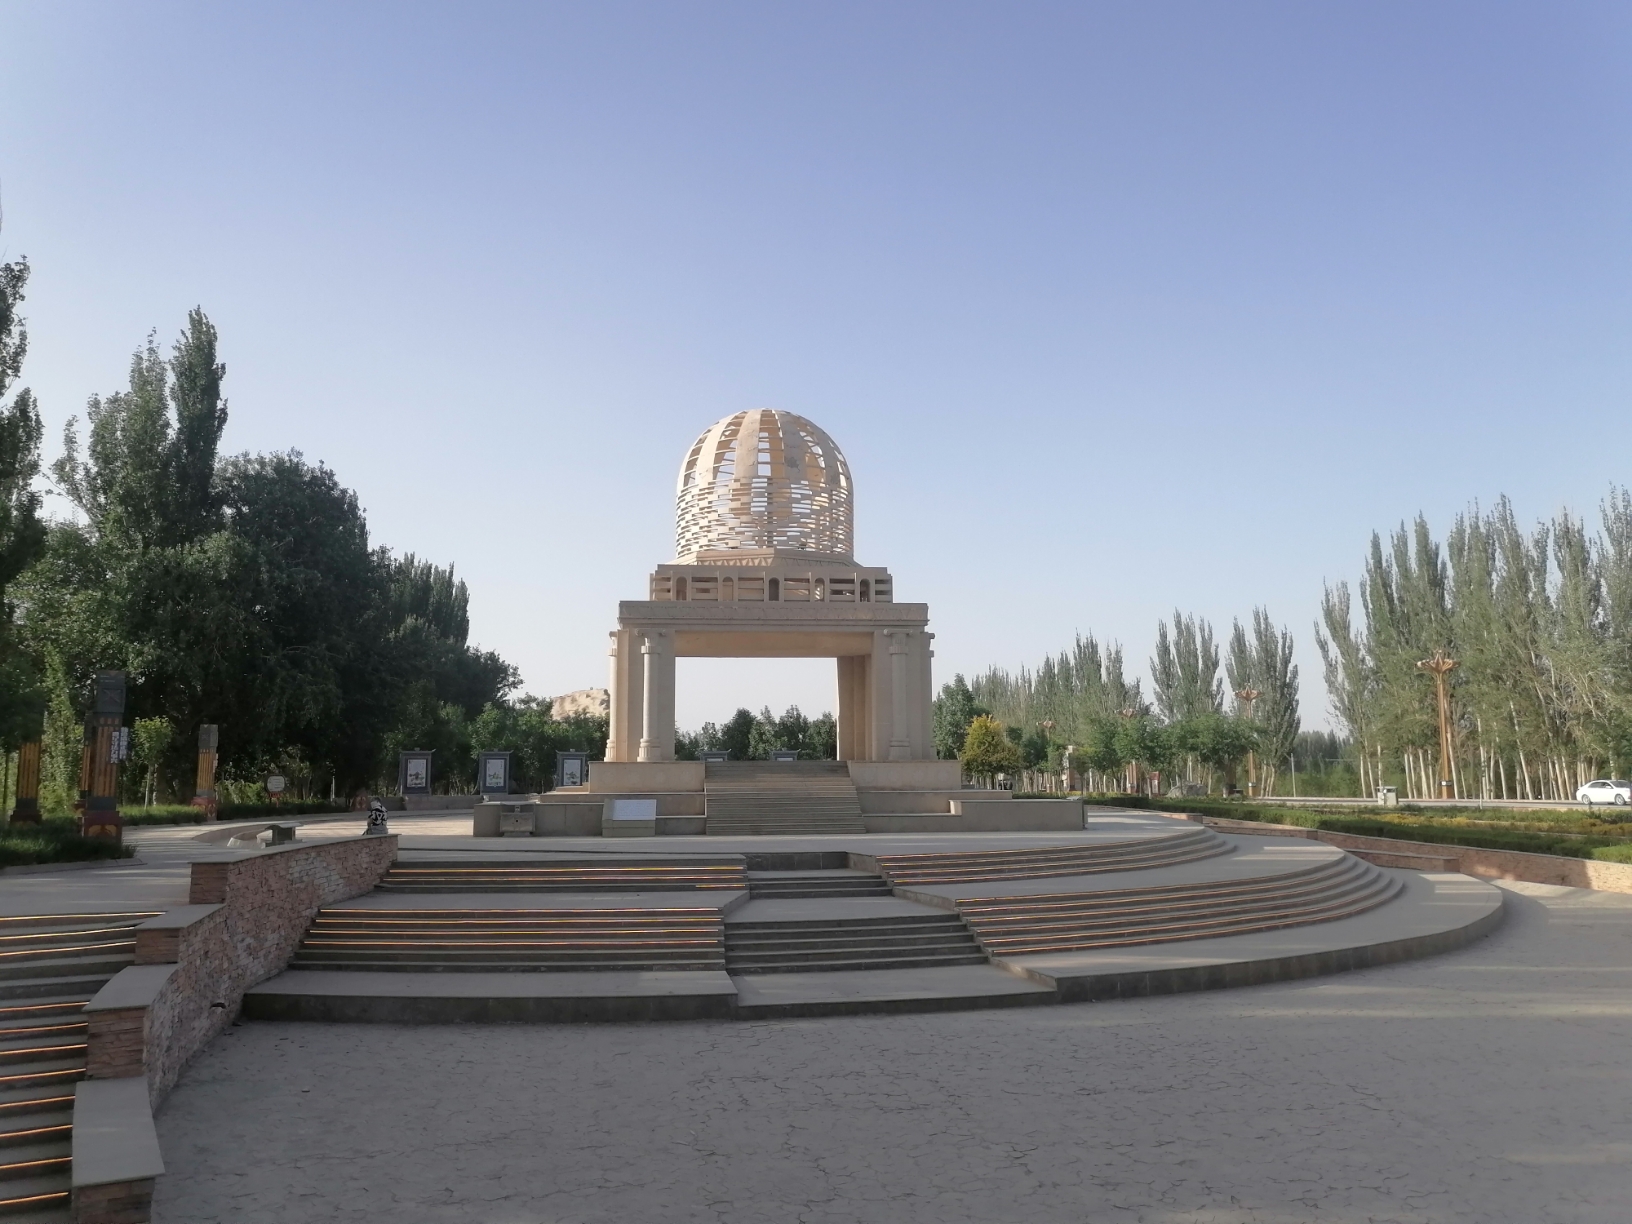 5月6日新疆若羌楼兰文化公园。周一楼兰博物馆没开放，我们在若羌休整一天。傍晚去了楼兰文化公园，公园给